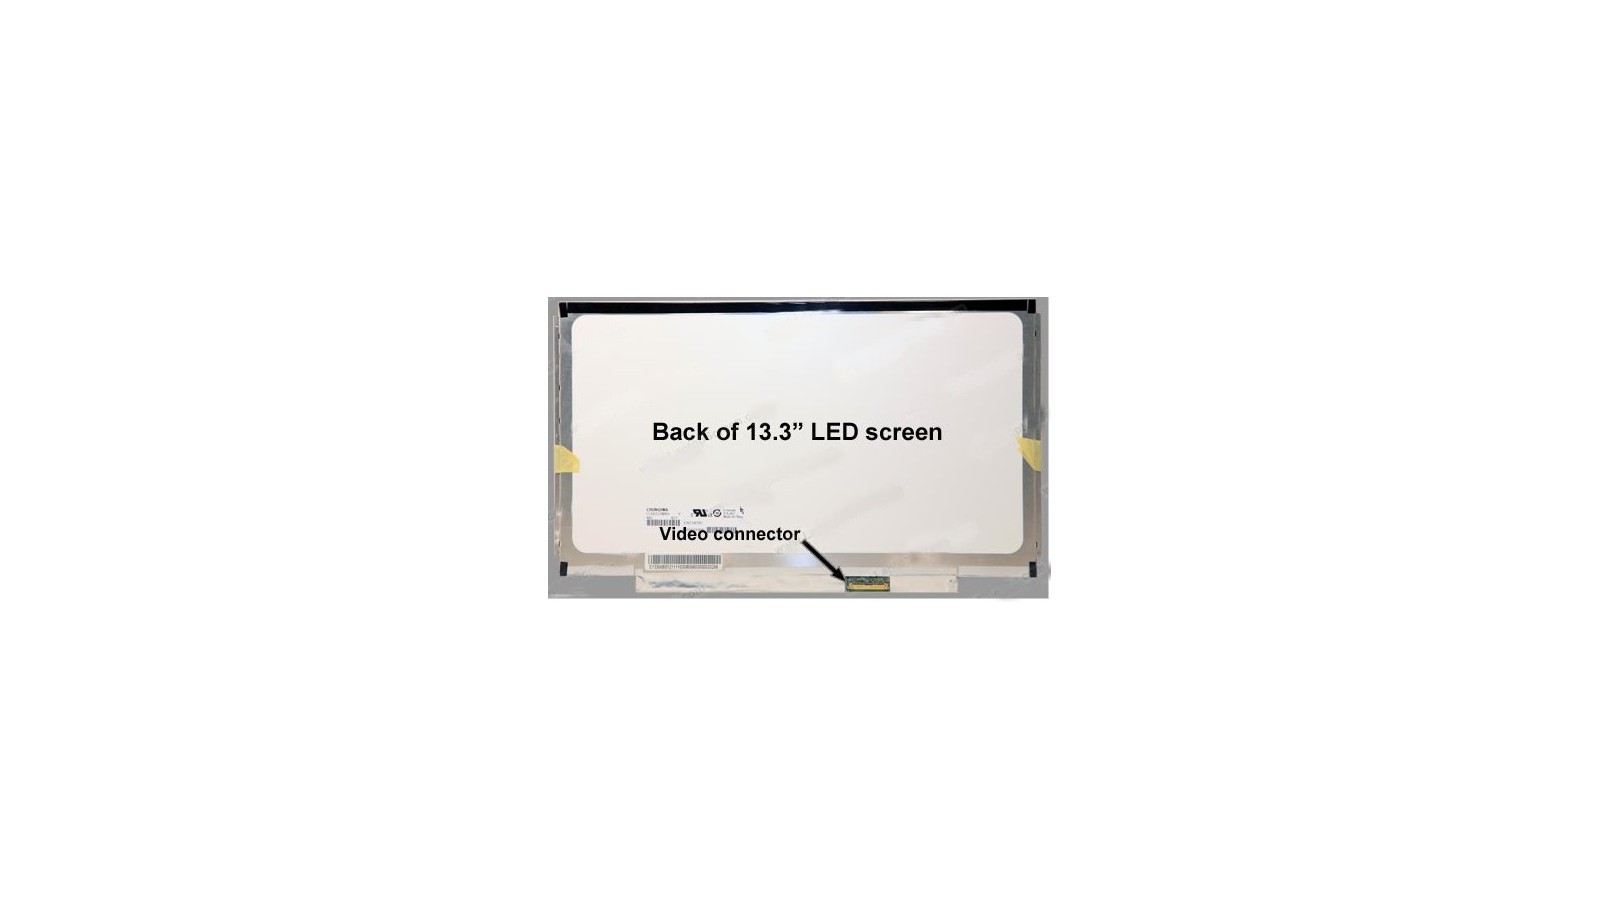 Display LCD Schermo 13,3 Led compatibile con Asus X301A